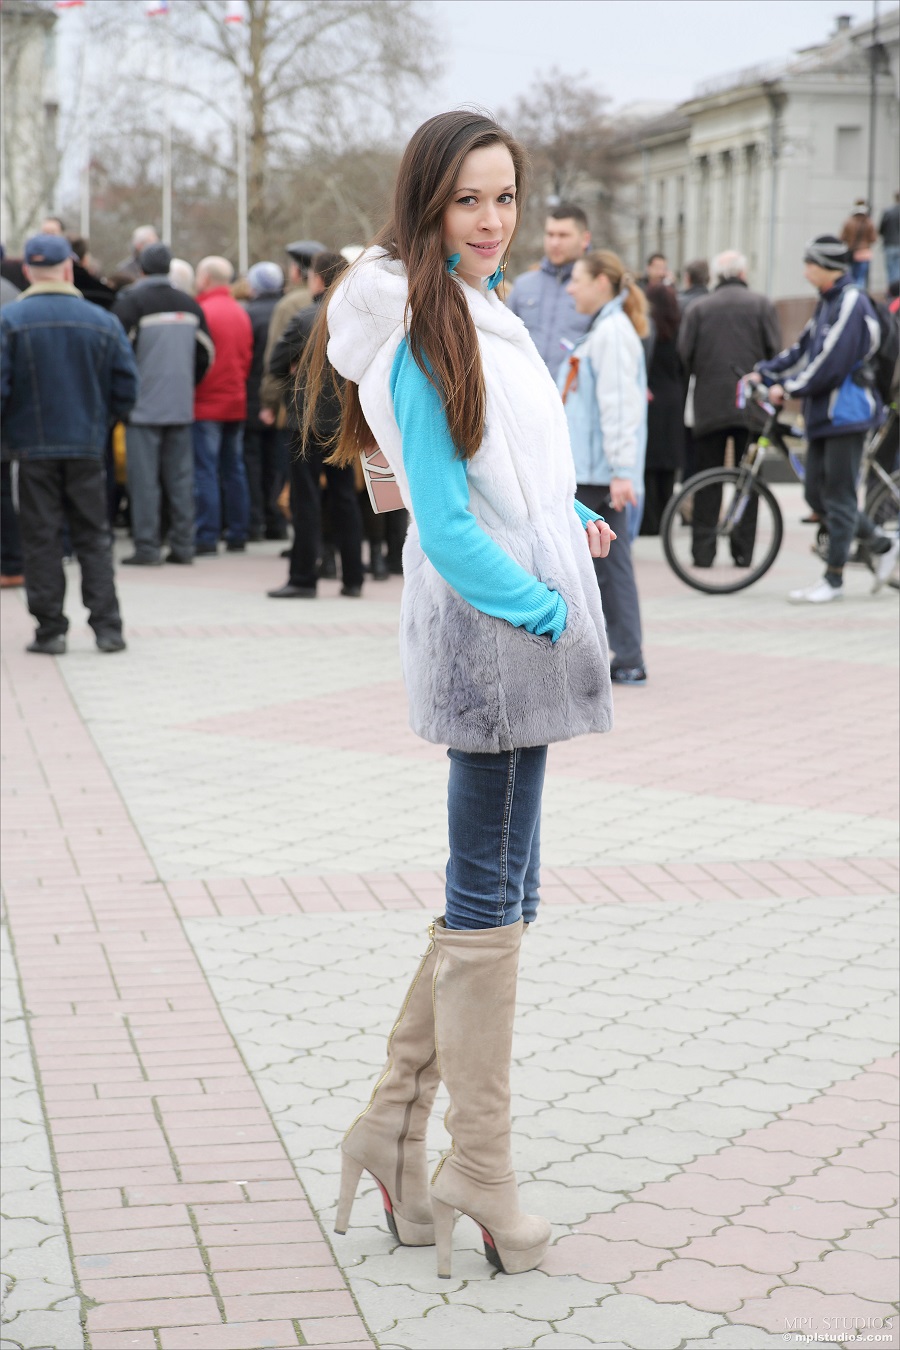 Women Long Hair Public Street View Brunette Hands In Pockets Knee High Boots 900x1350